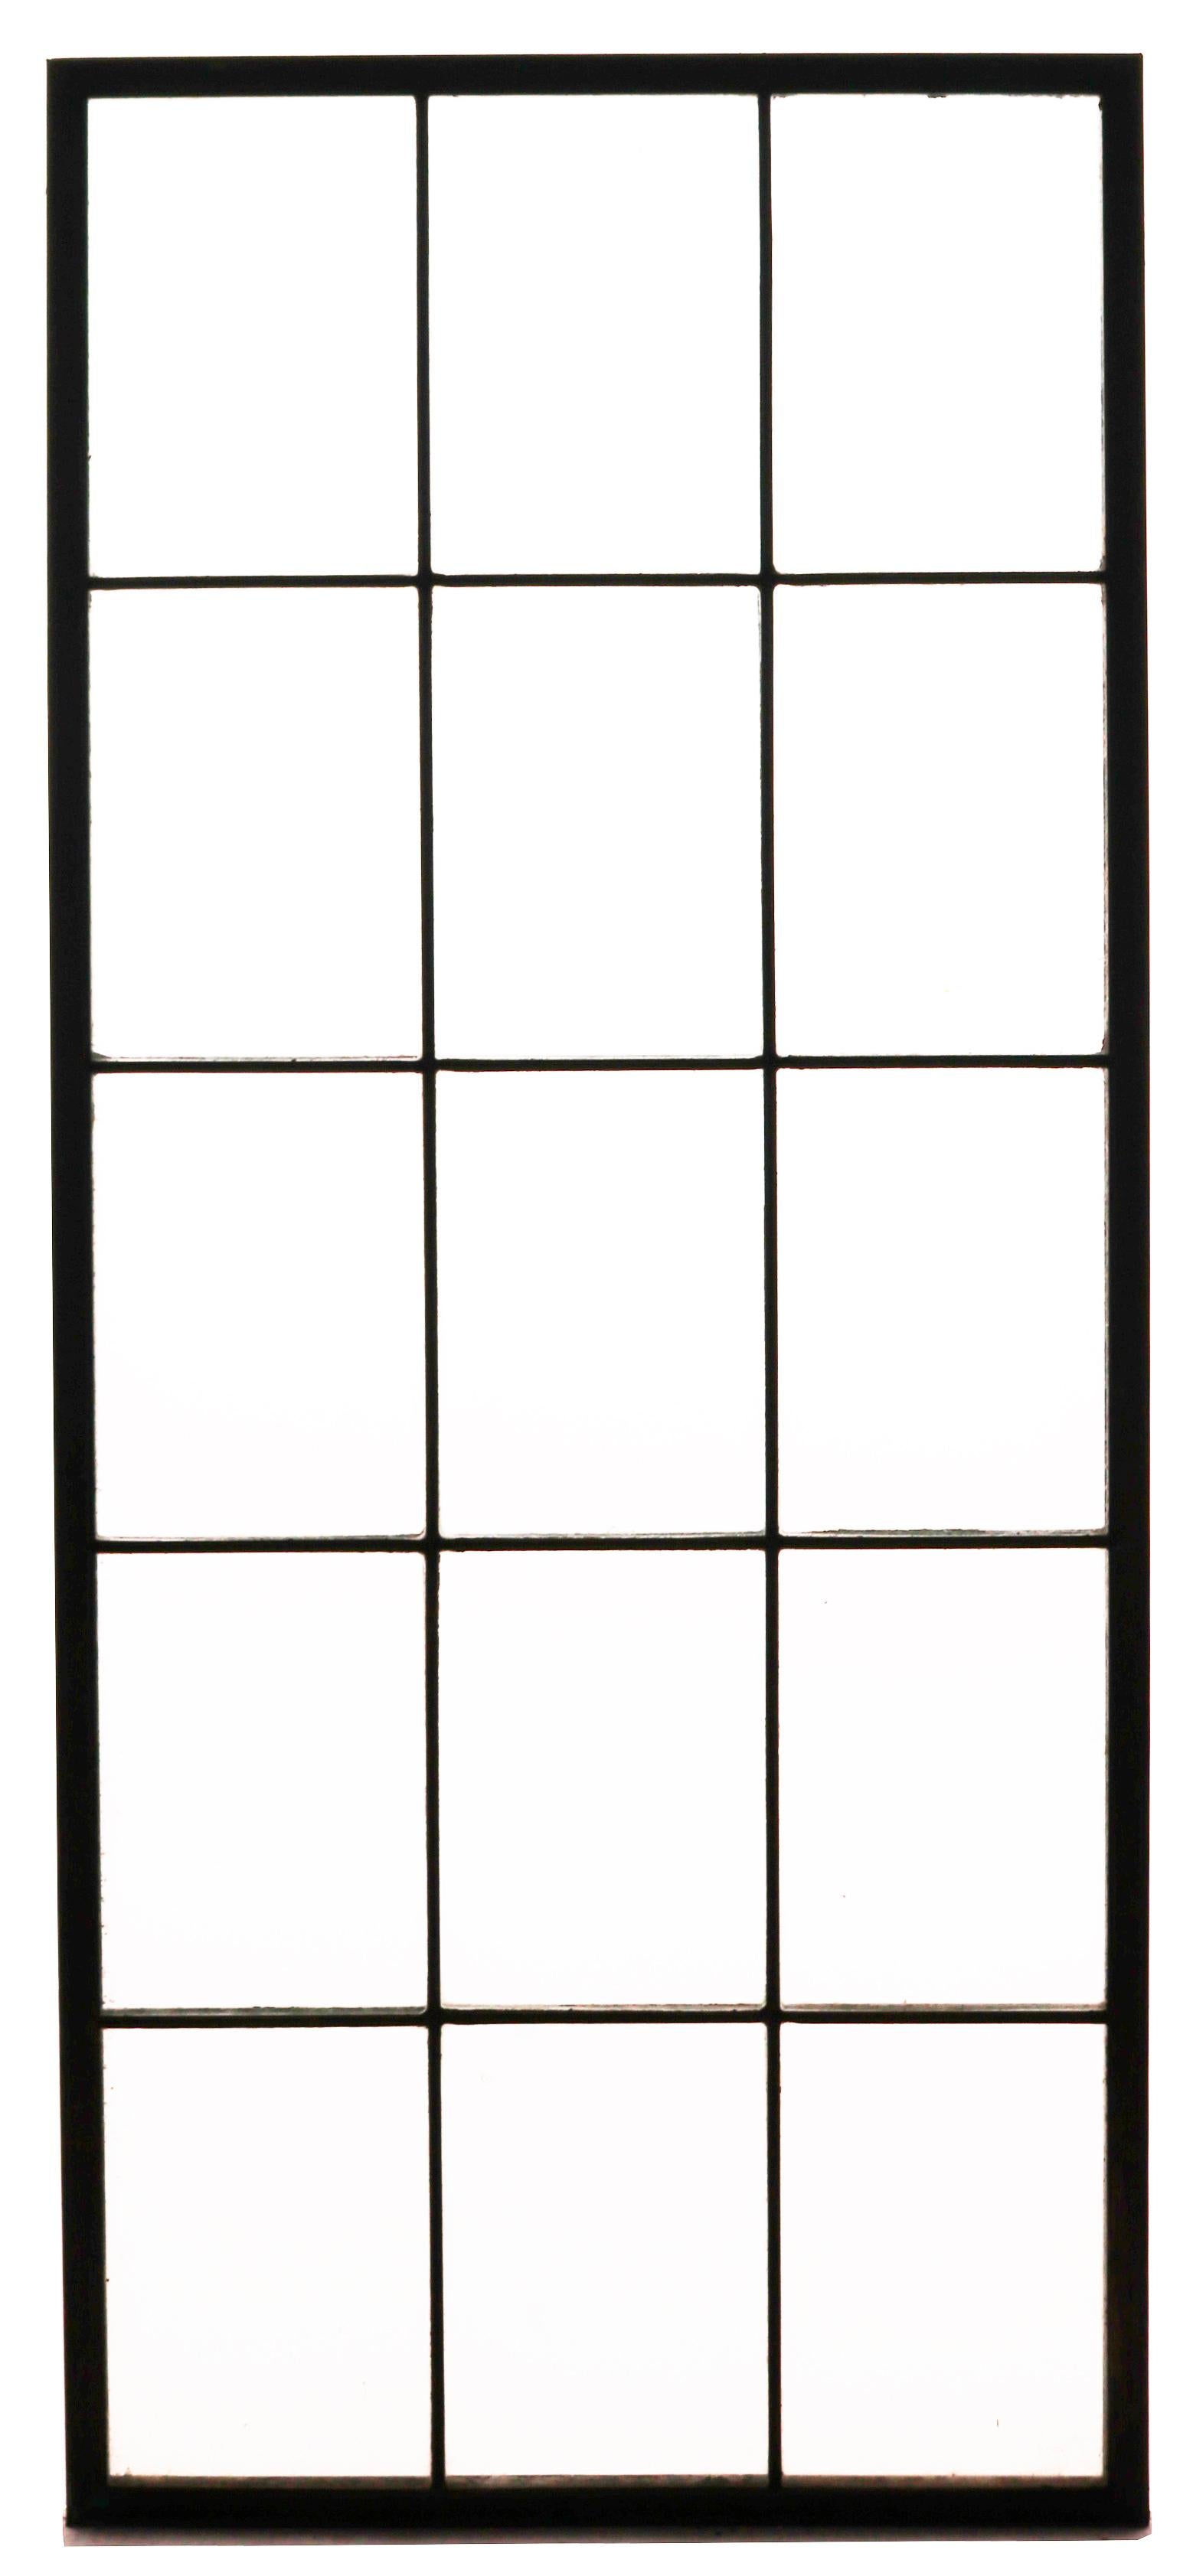 Panneaux de fenêtre en cuivre originaux de la période Art déco. Le prix est pour les 12 pièces, nous pouvons diviser ce lot, veuillez nous contacter.
 
Dimensions supplémentaires :
 
57 x 25 x 1 pièce